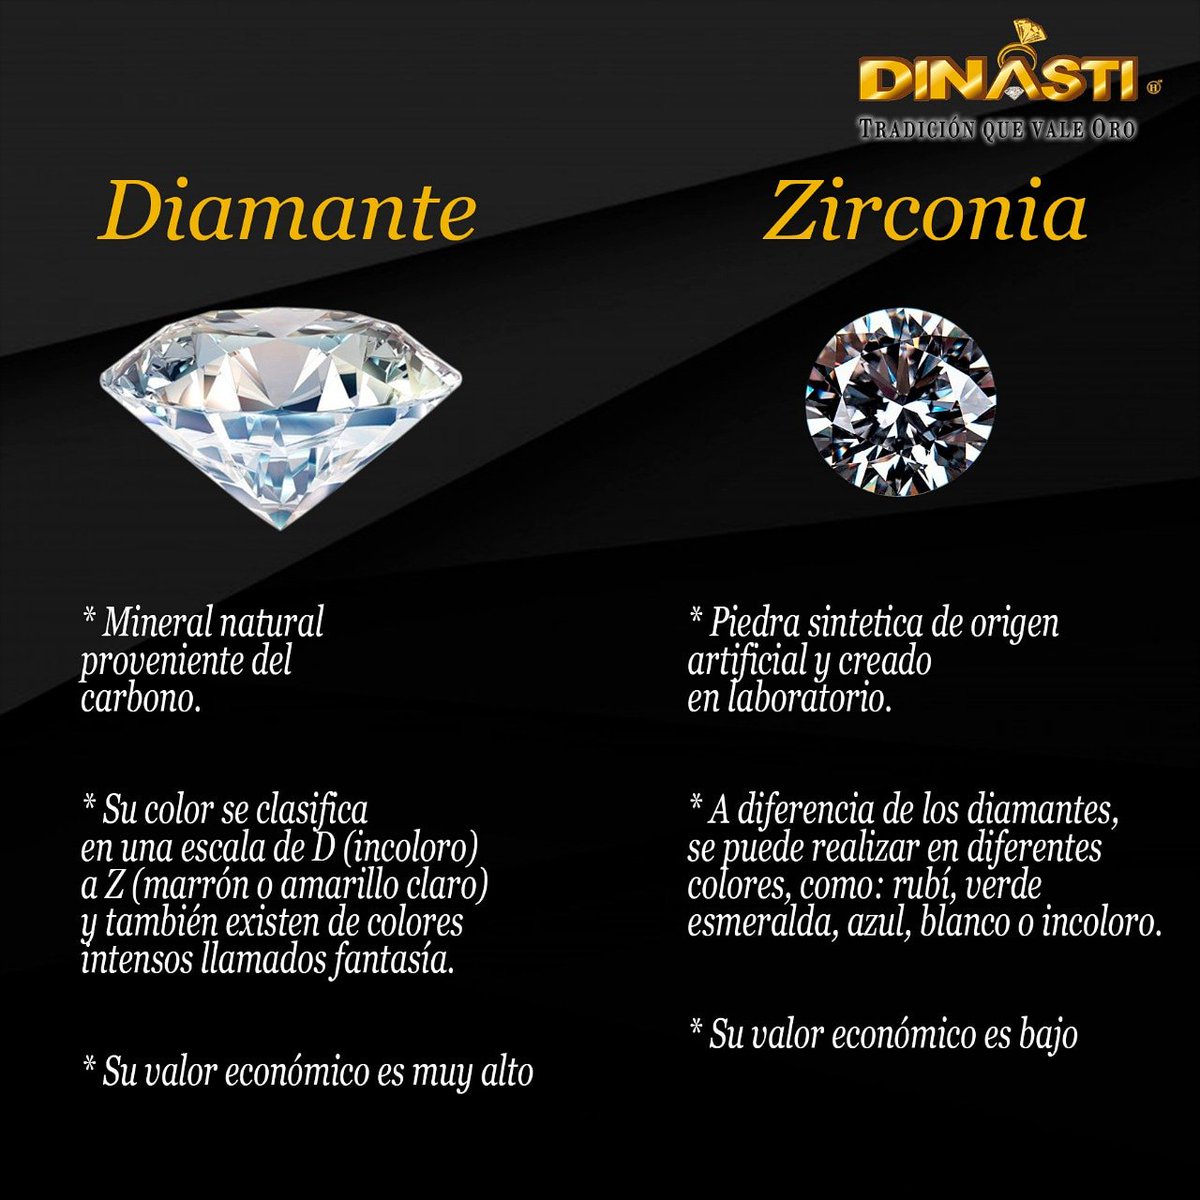 Joyería Dinasti on Twitter: "Conoce la diferencia entre Diamante y Circonia.  Pará que en tu próxima compra tomes la decisión correcta a la hora de  elegir la piedra que más te convenga. #